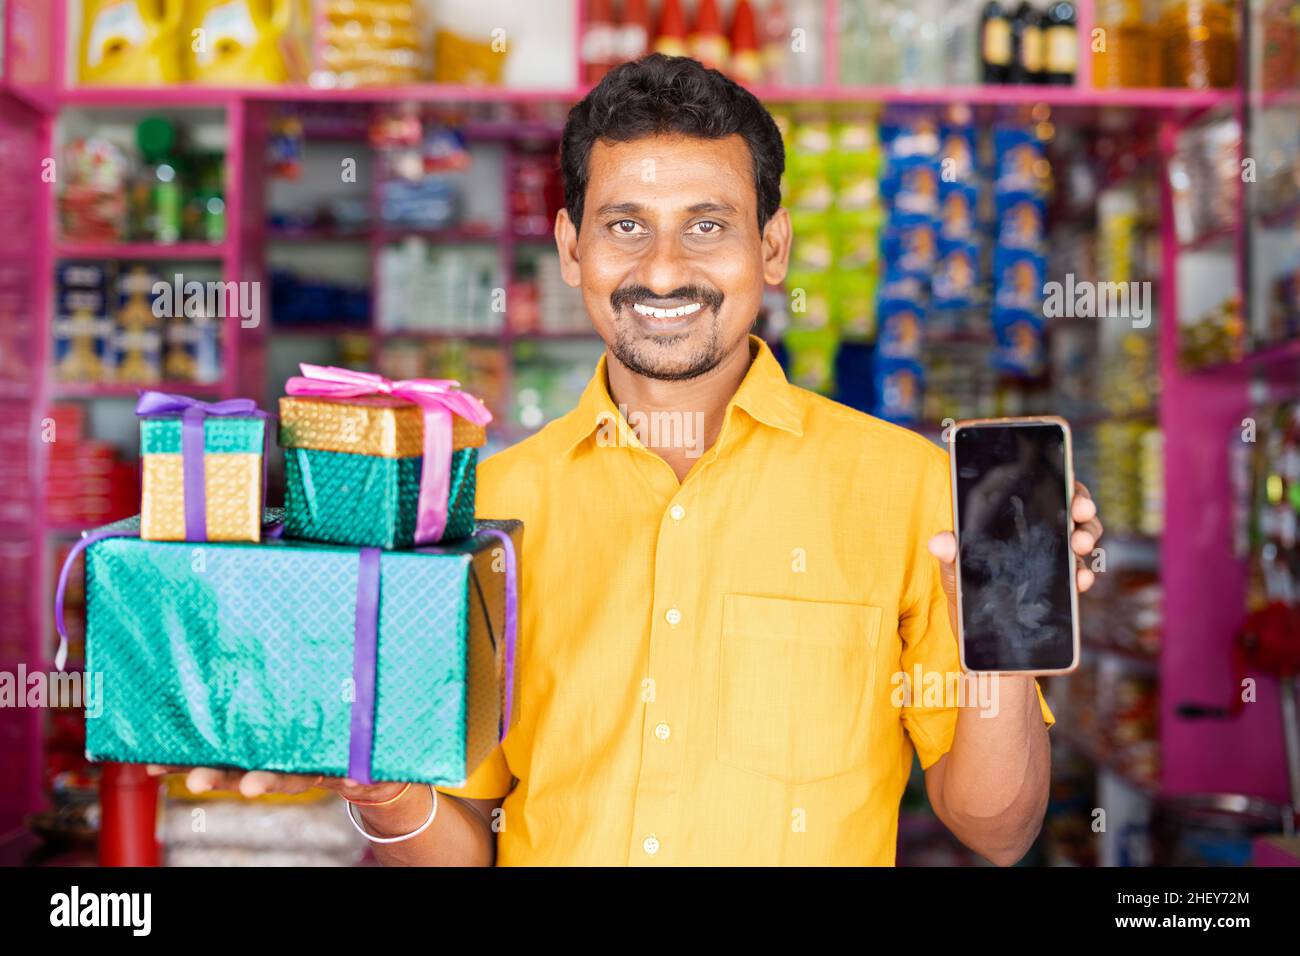 Kirana Shop Merchant con cajas de regalos y teléfono móvil en la mano de la cámara de loking - conmascotas de las ventas del festival, ofertas promocionales para ganar premios de Foto de stock